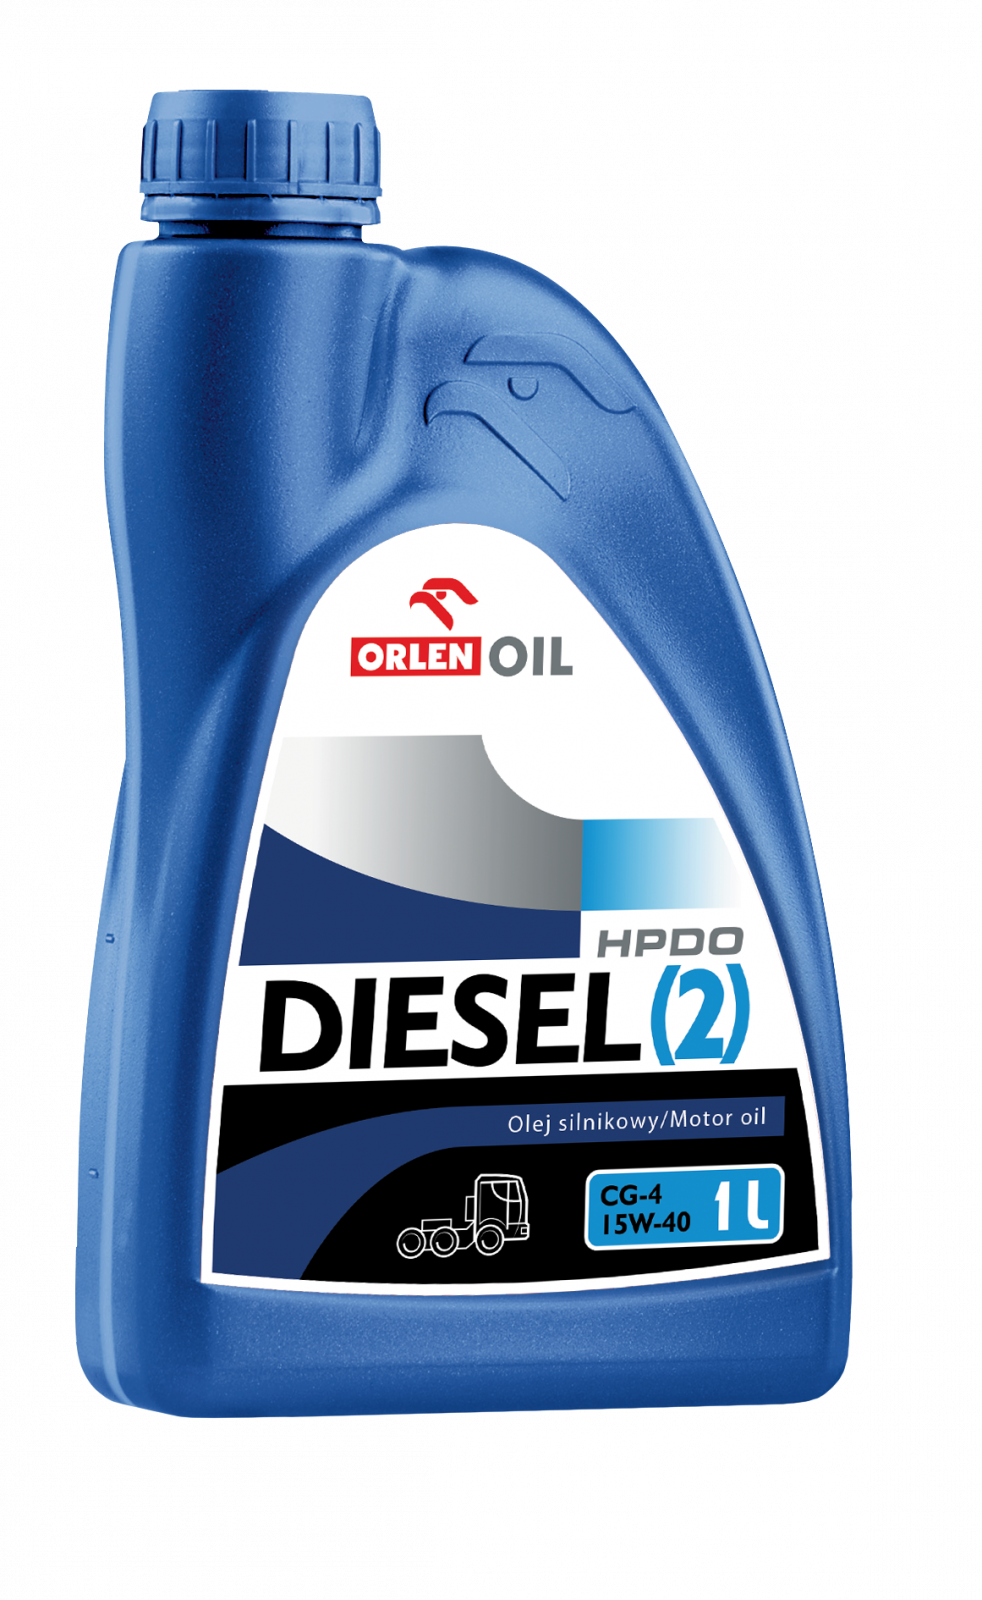 ORLEN OIL DIESEL (2) HPDO CG-4 15W-40 5l